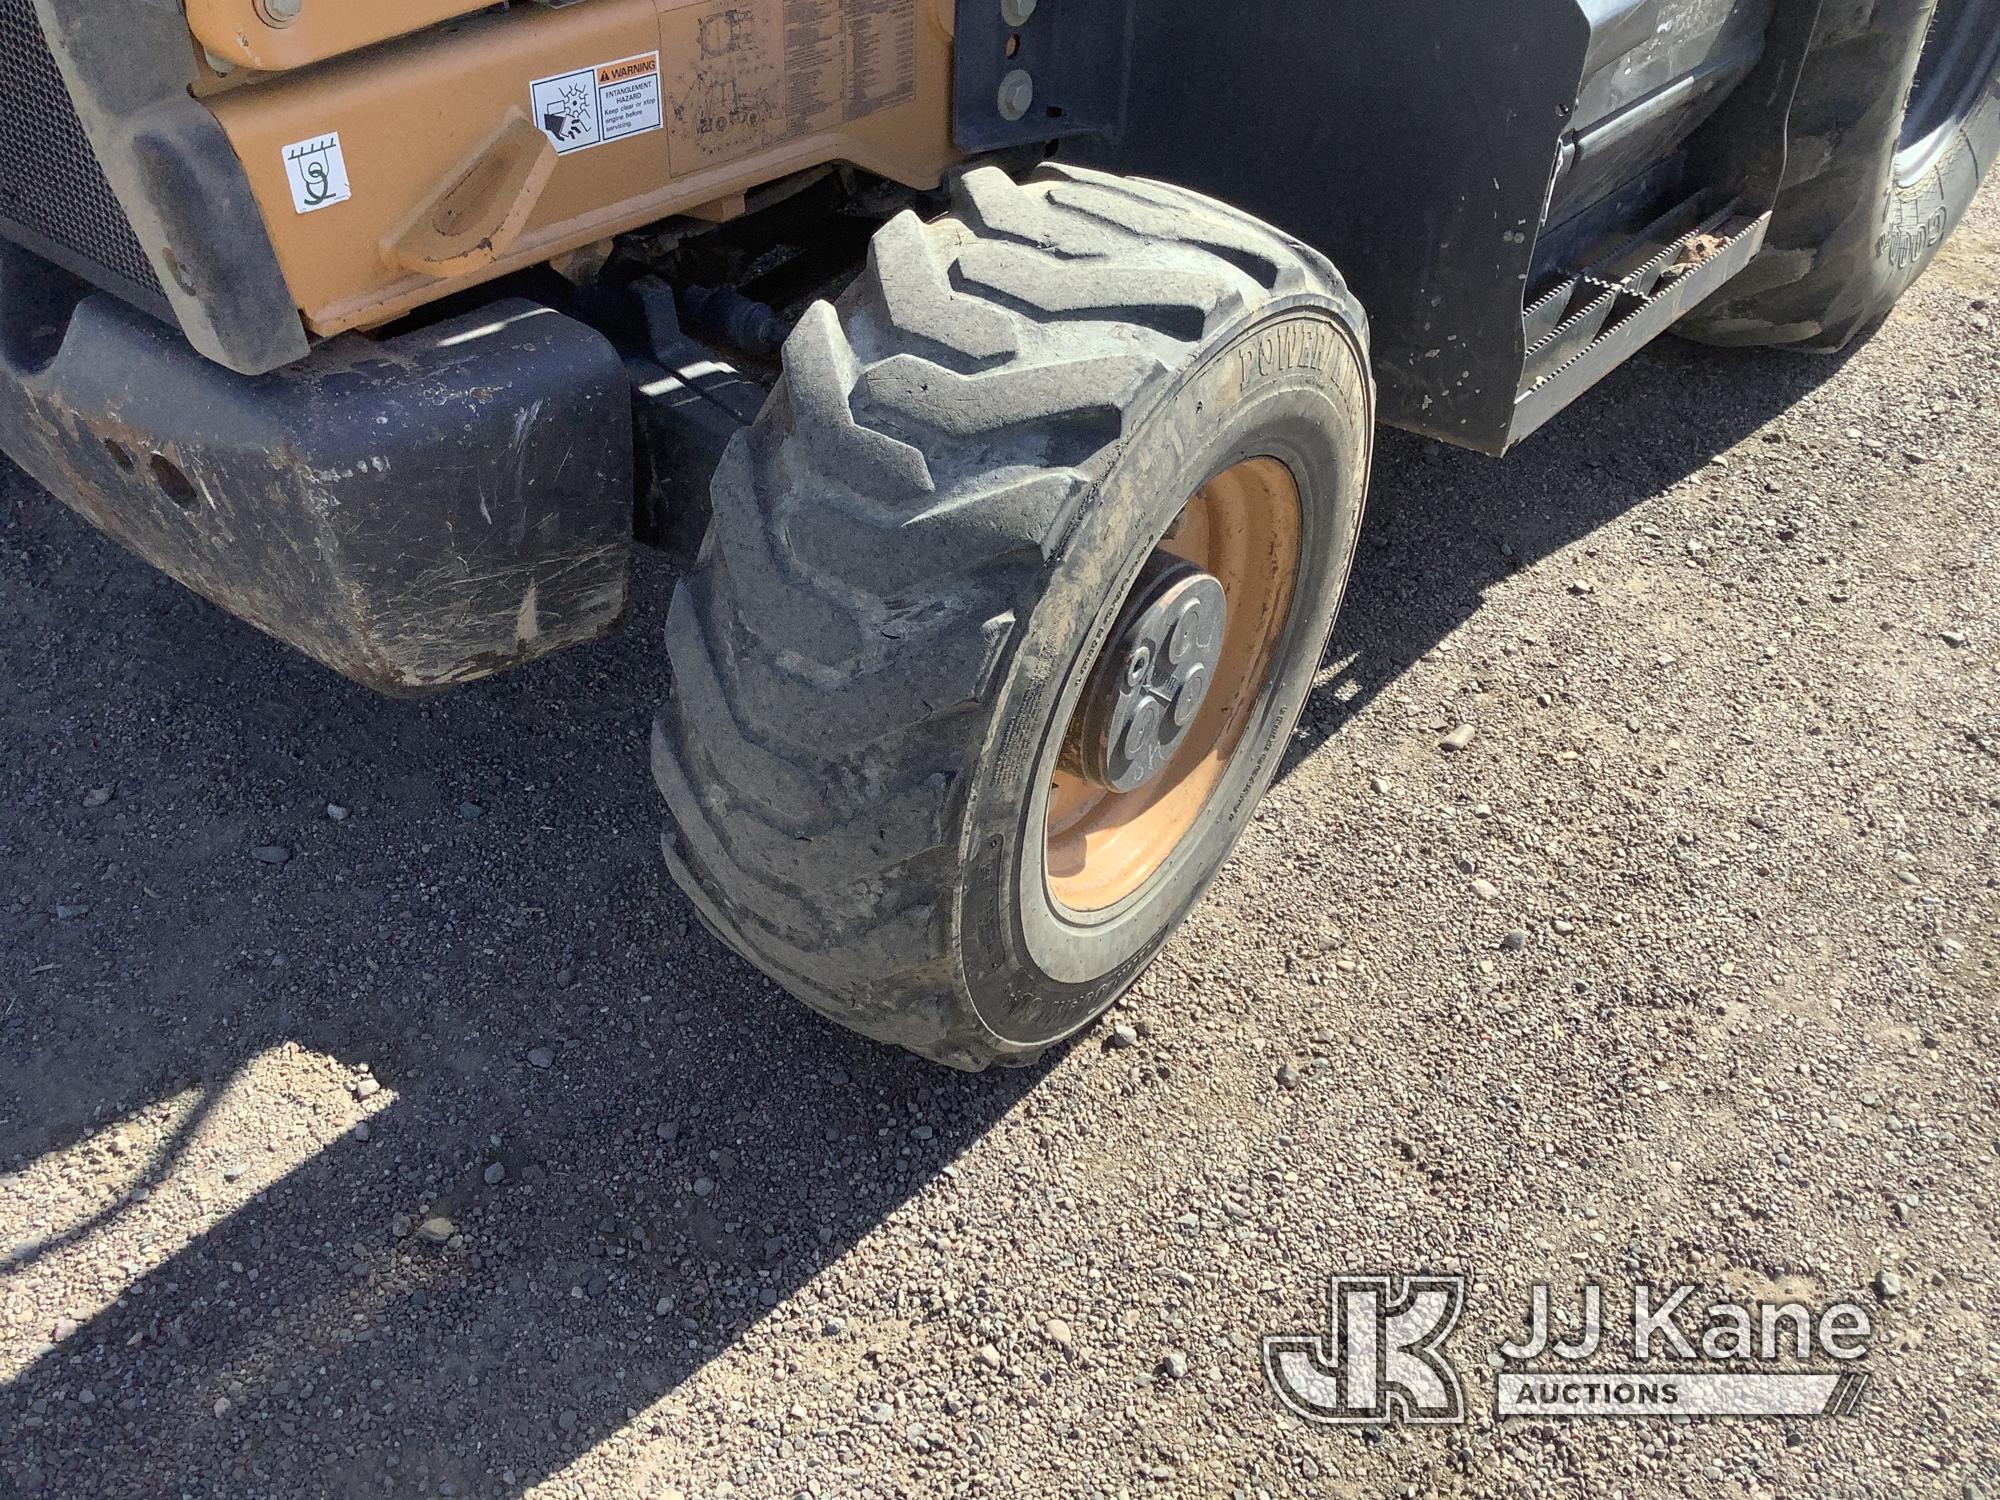 (Phoenix, AZ) 2018 Case 580 Super N 4x4 Tractor Loader Backhoe Runs, Moves, & Operates